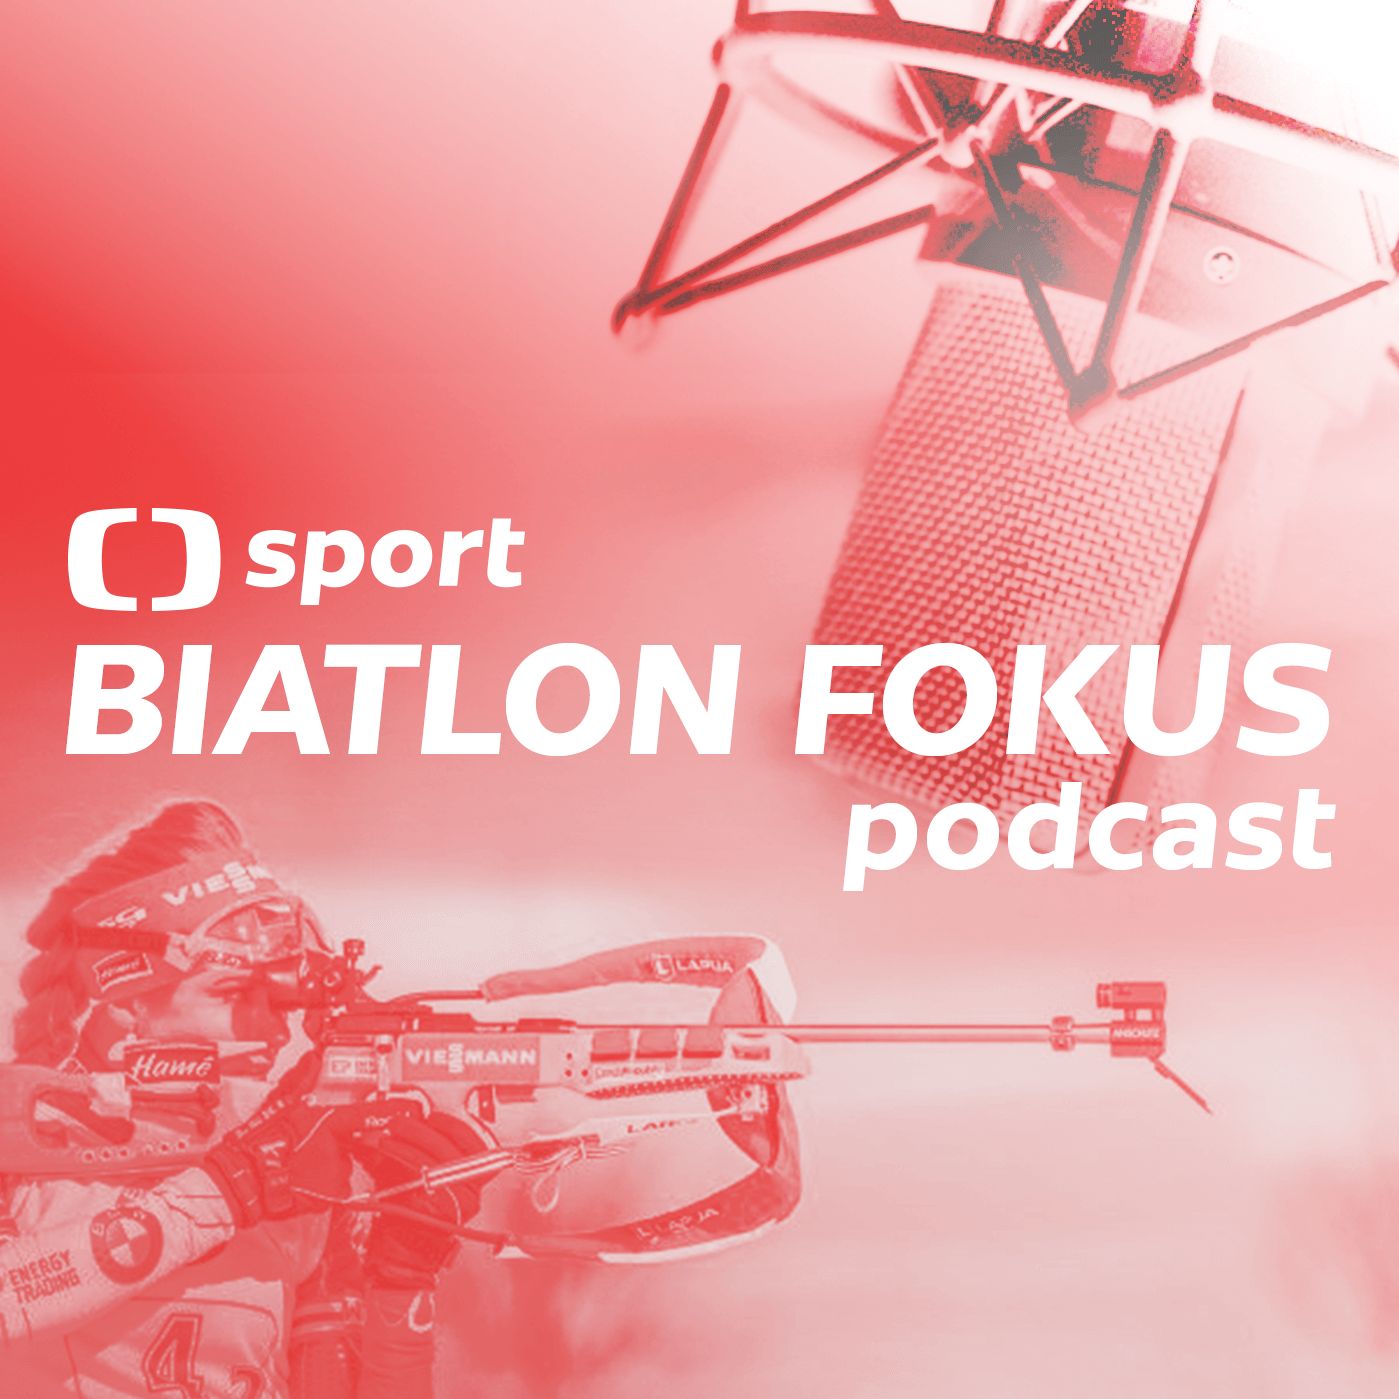 Biatlon fokus podcast: Olympijská sezona začíná. Je Koukalová a český tým v ideálním rozpoložení?